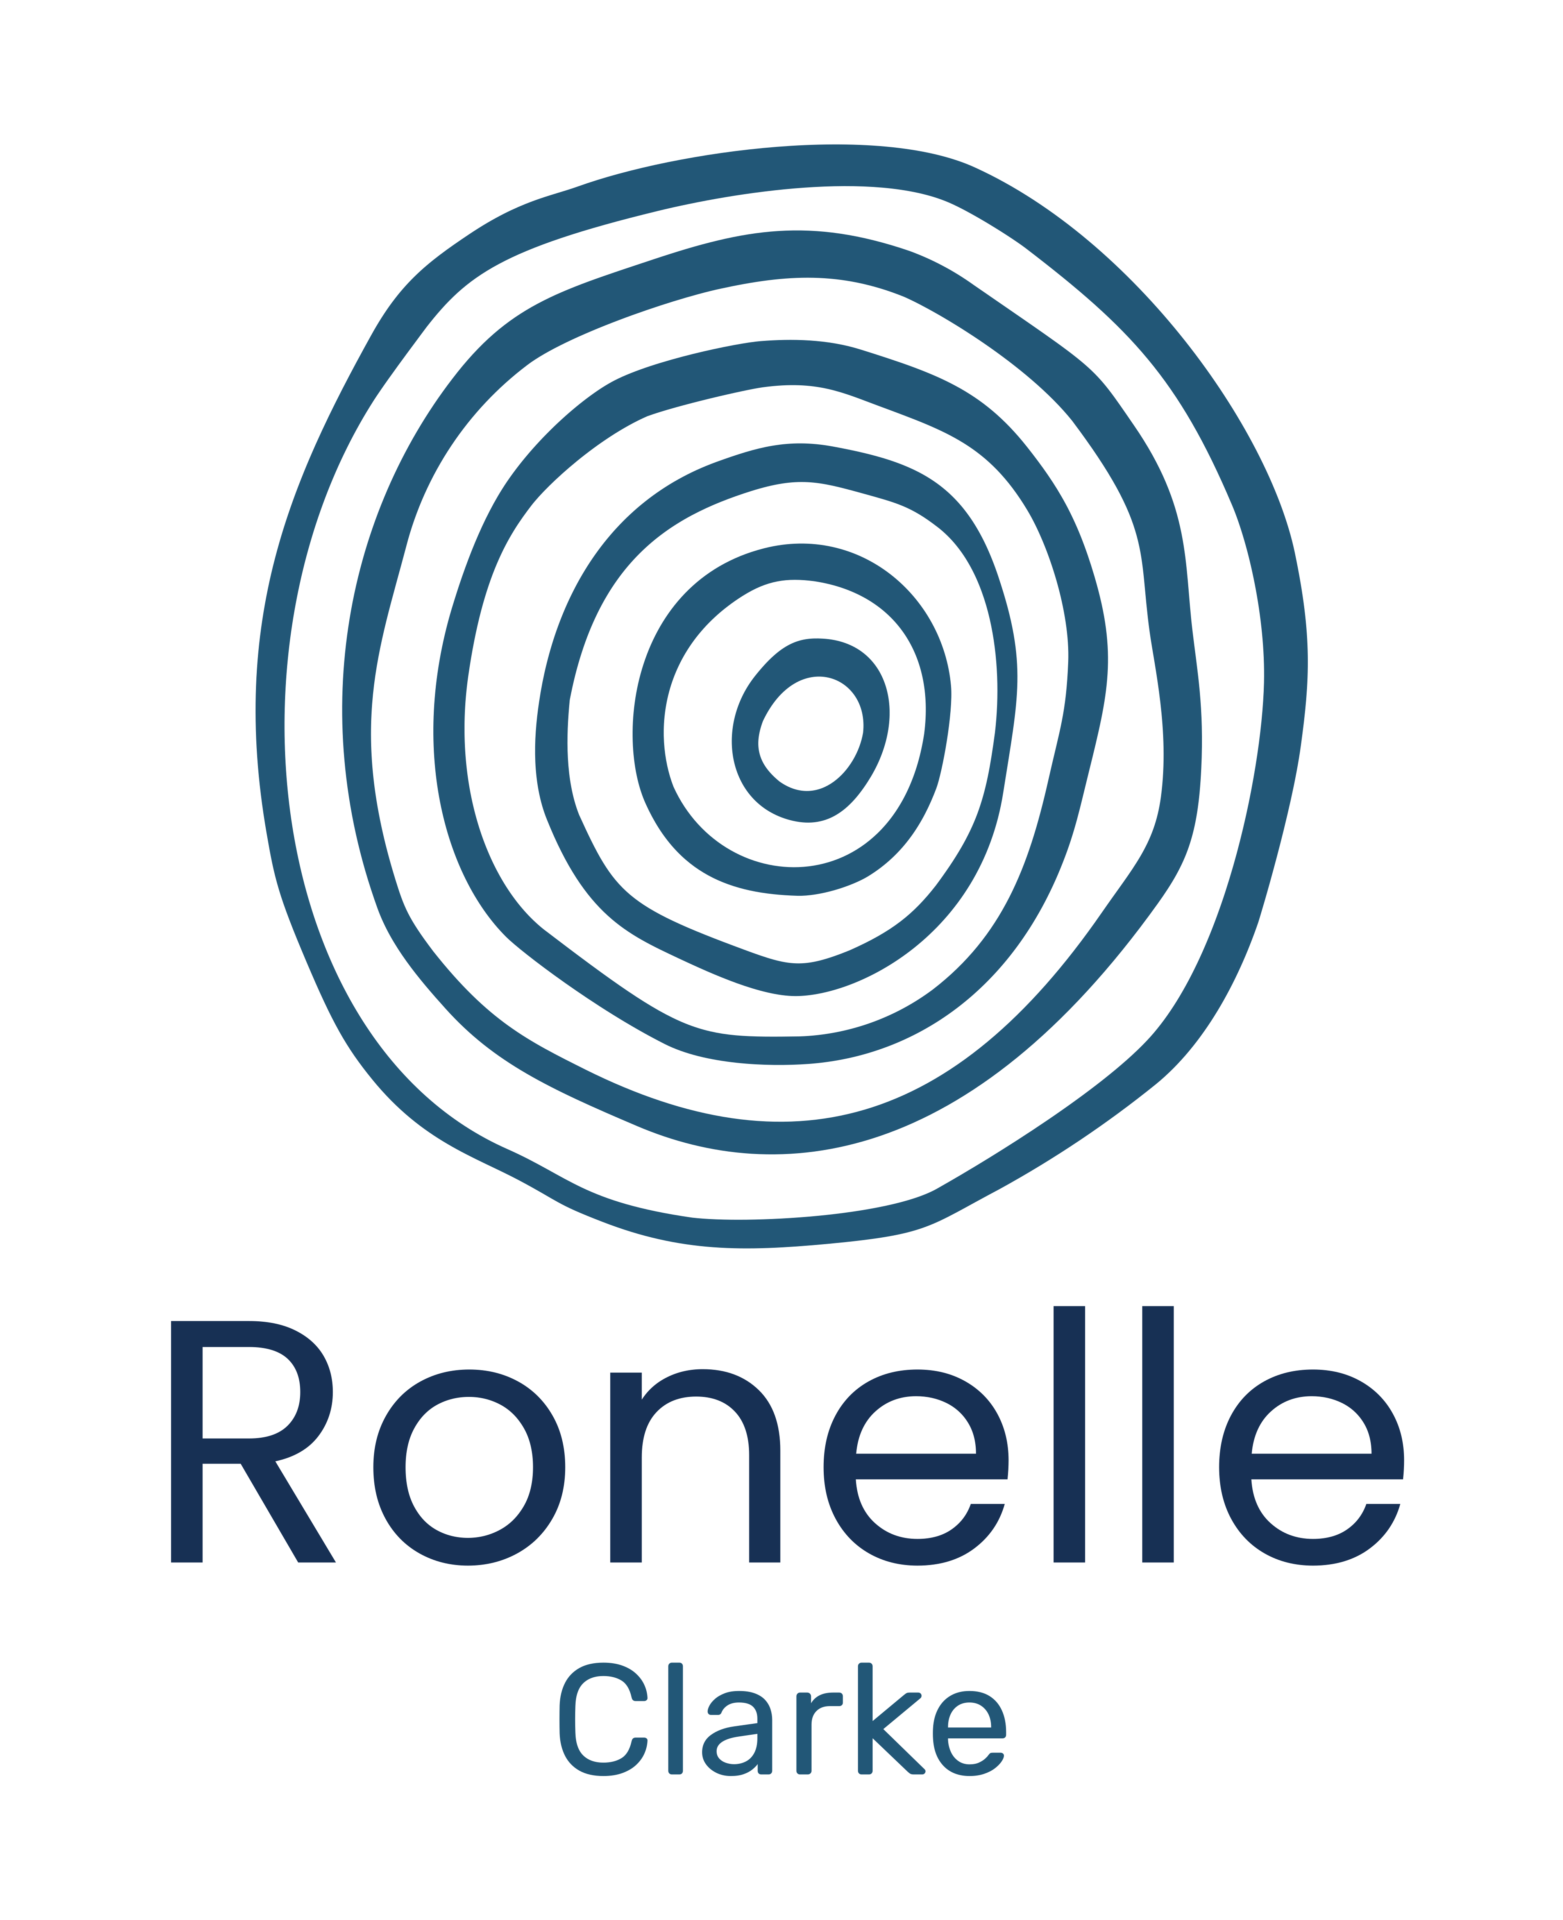 Ronelle Clarke logo - for Mailing List and Tea Beaker